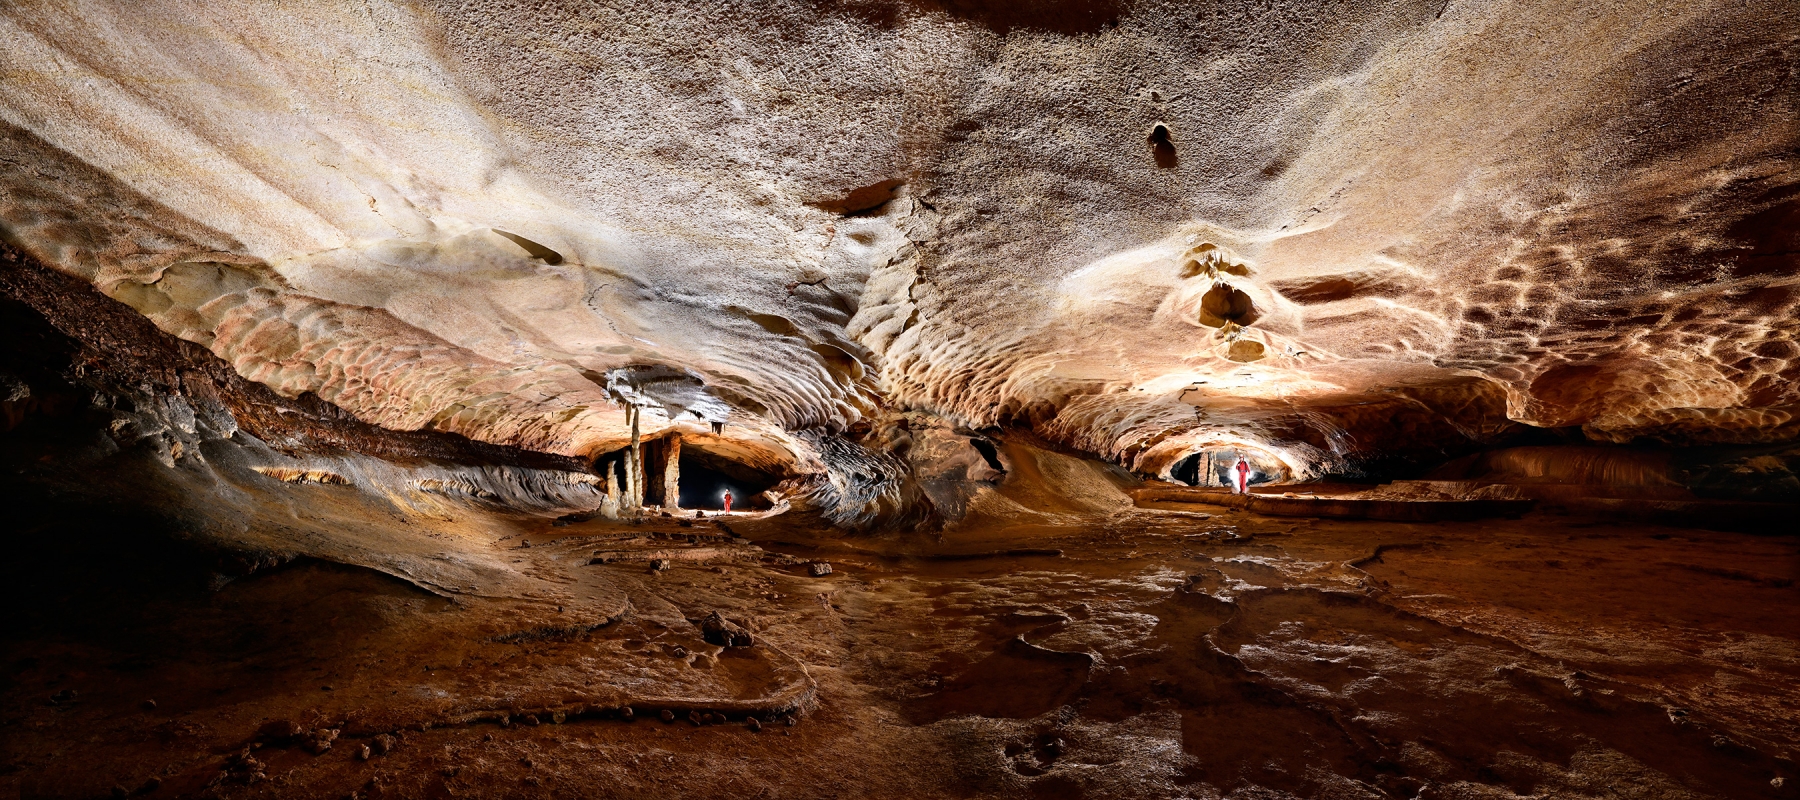 Grotte de Saint-Marcel d'Ardèche (réseau I) - La galerie des boas avec son virage à 135°. Ce panoramique a été réalisé par assemblage de deux photos.